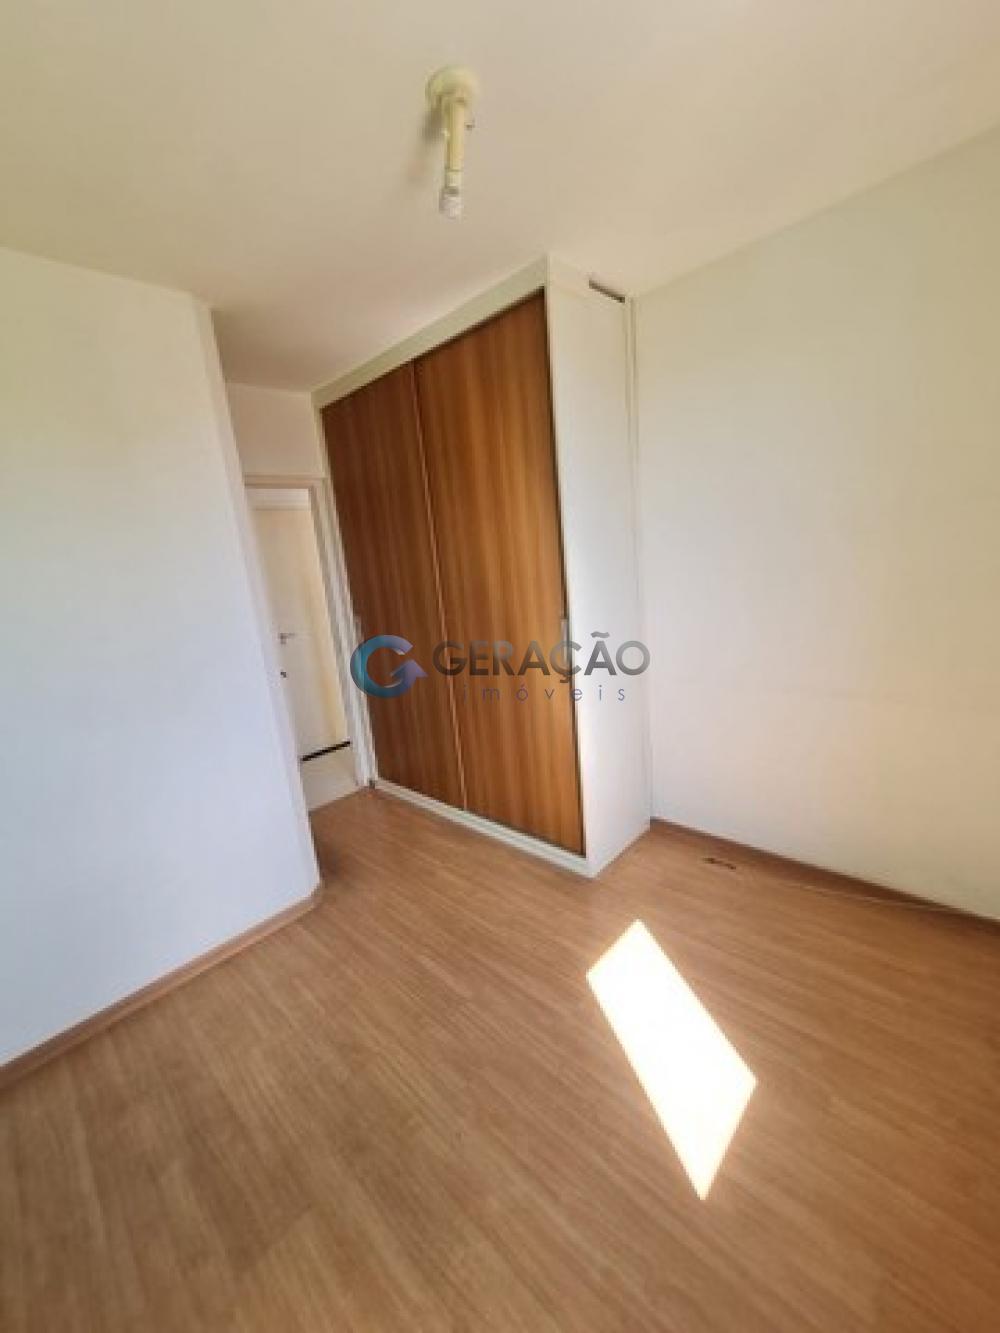 Comprar Apartamento / Padrão em São José dos Campos R$ 447.000,00 - Foto 12